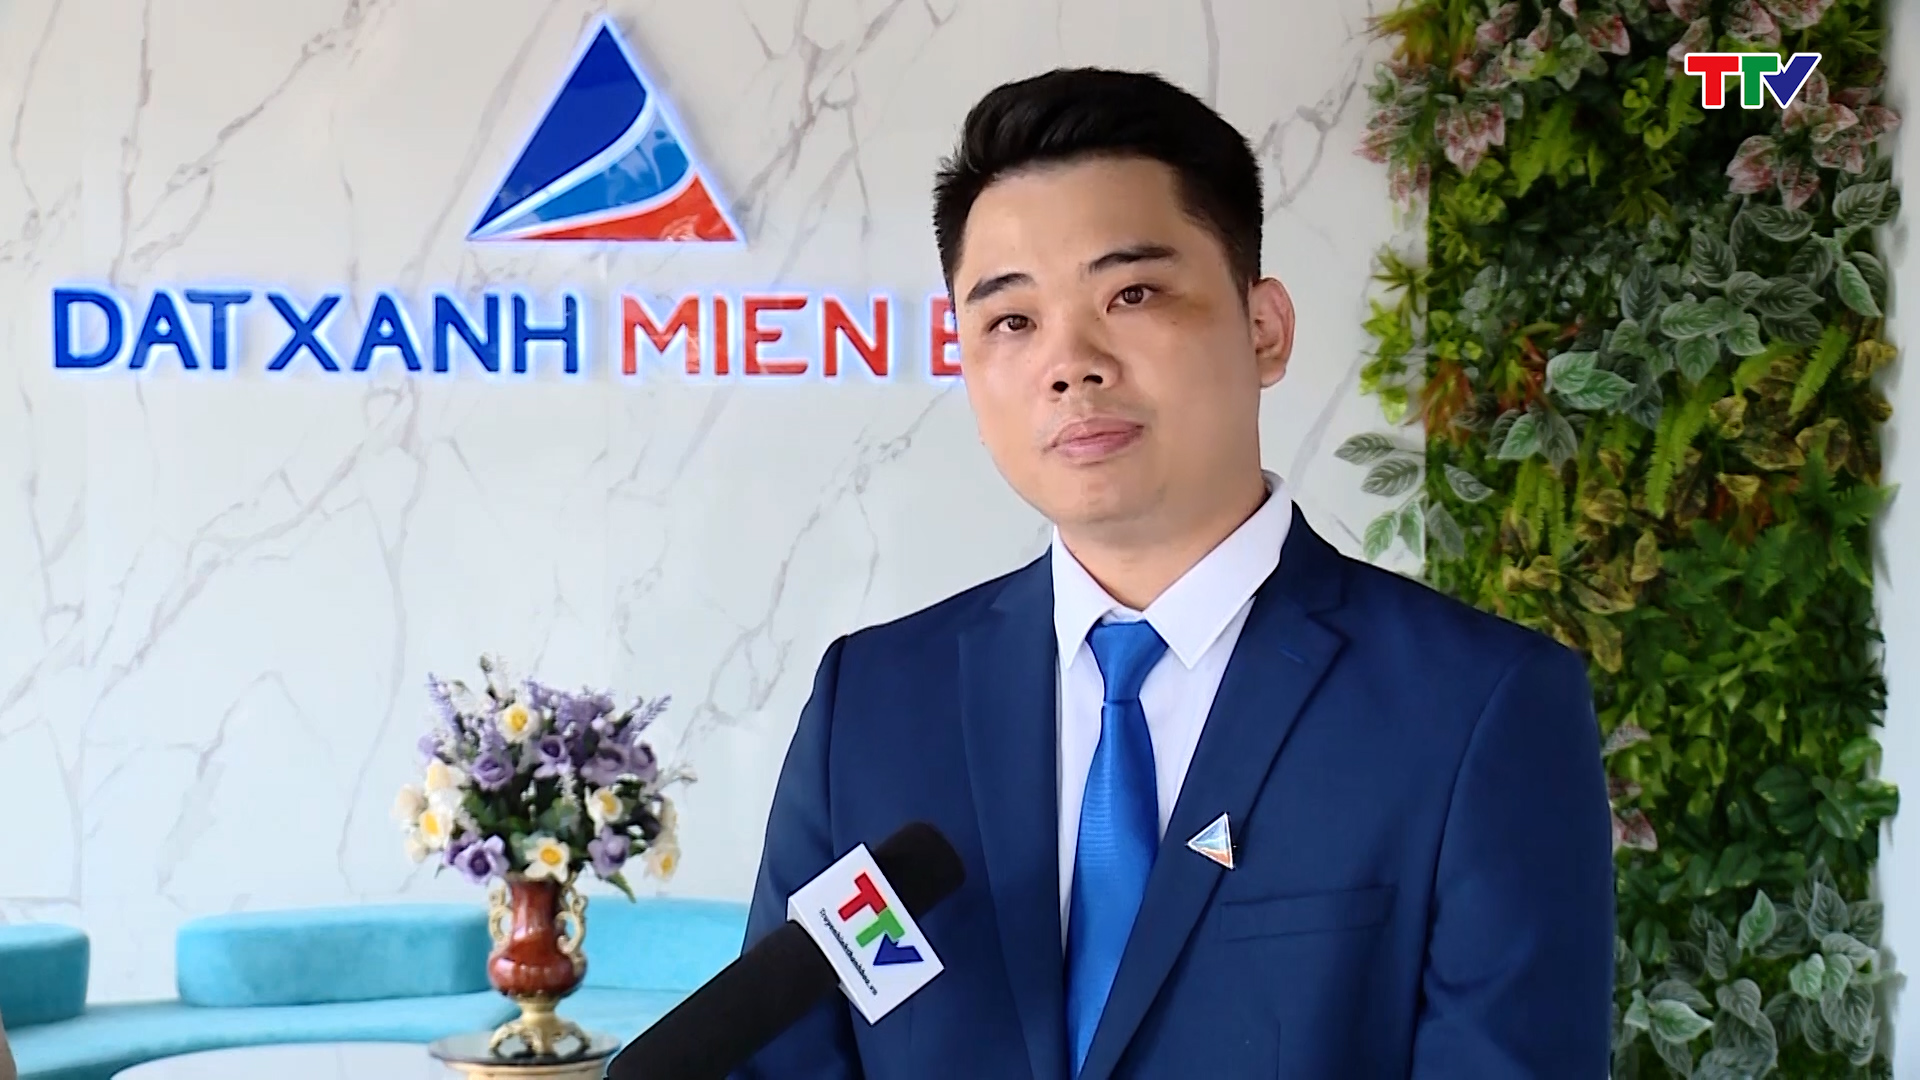 Doanh nhân trẻ Thanh Hóa đạt giải thưởng Doanh nhân trẻ Việt Nam tiêu biểu 2022 - Ảnh 2.